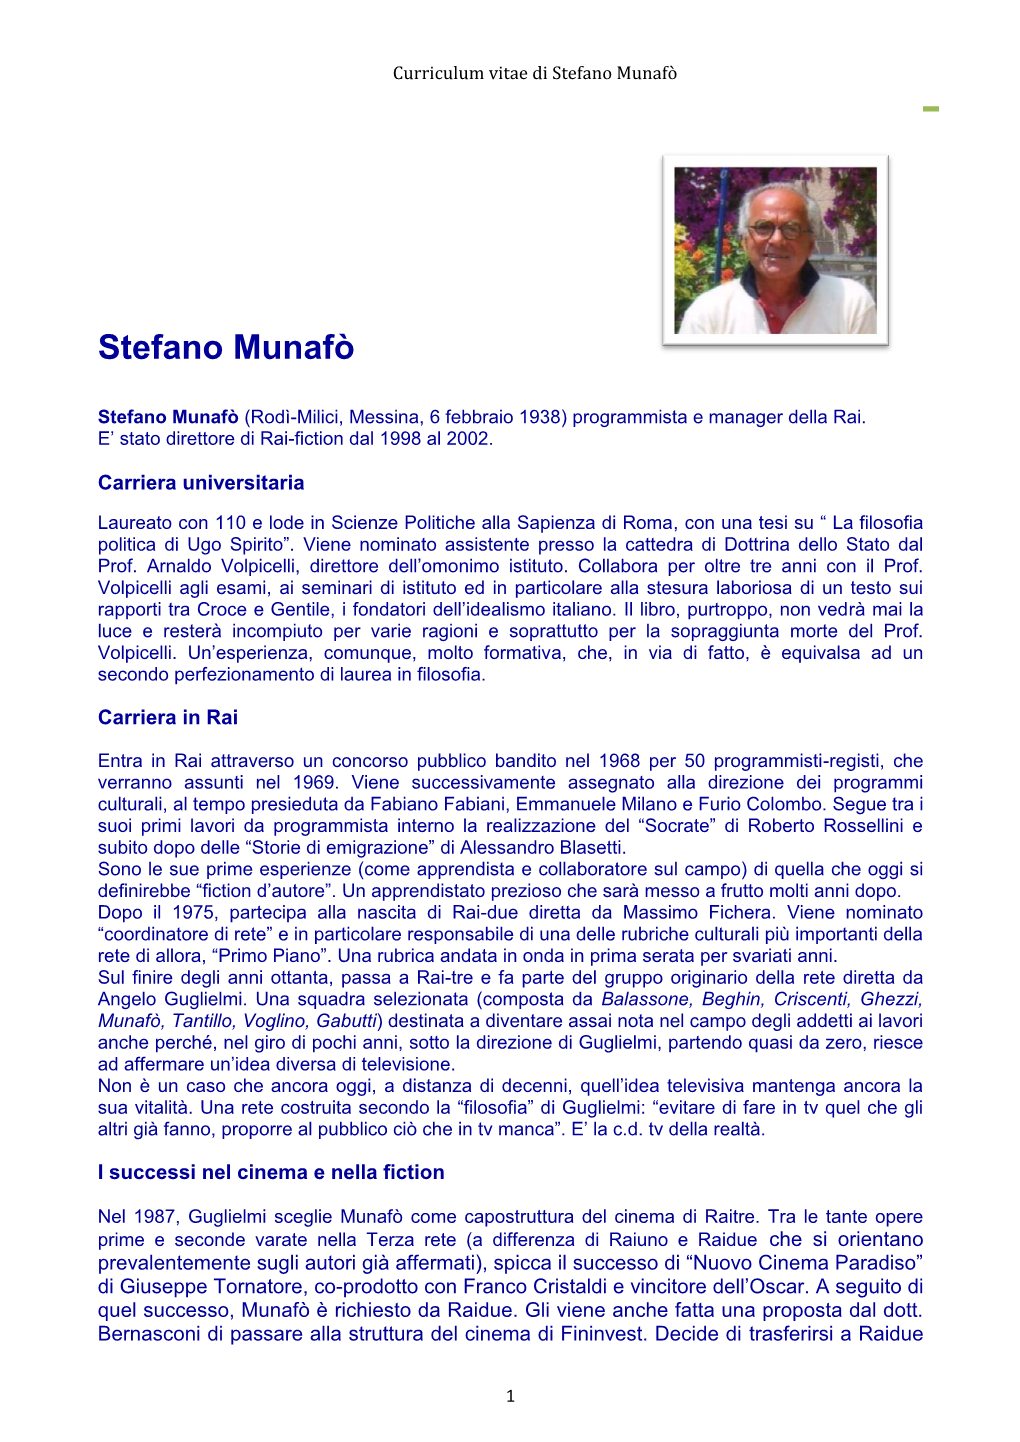 Curriculum Vitae Di Stefano Munafò